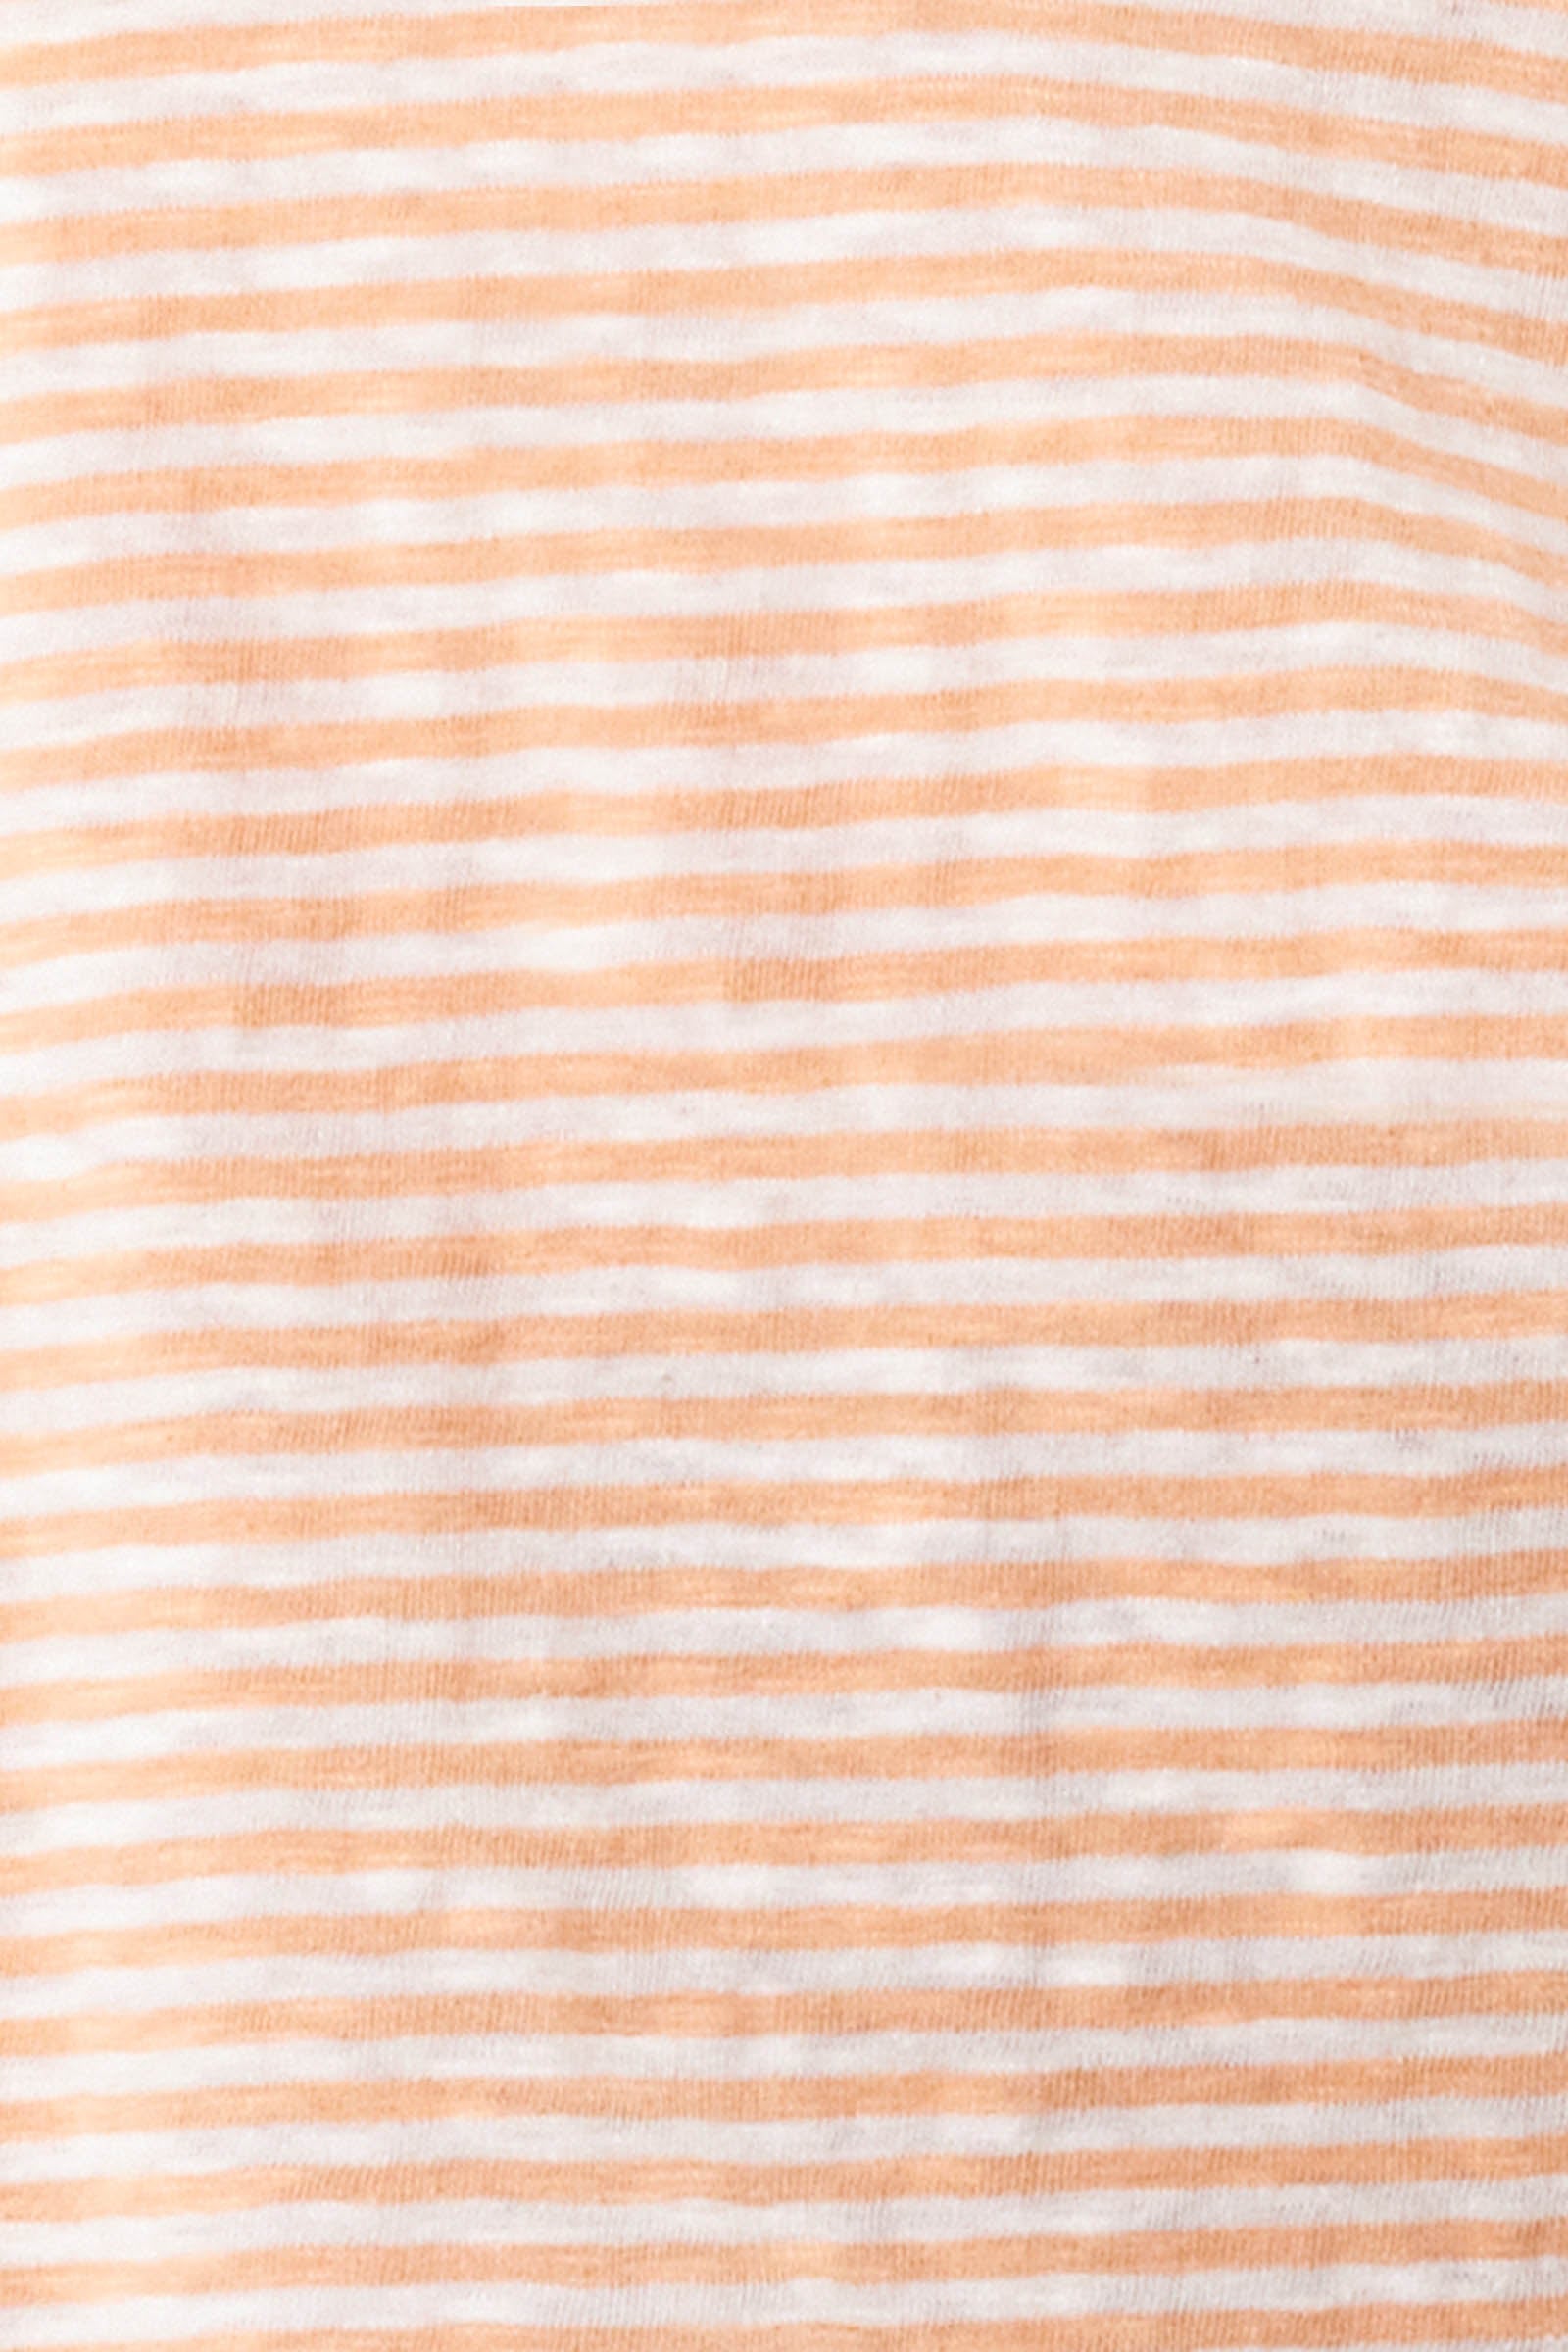 Tisane Stripe Tshirt - Sherbet - Isle of Mine Clothing - Top Tshirt 3/4 Sleeve